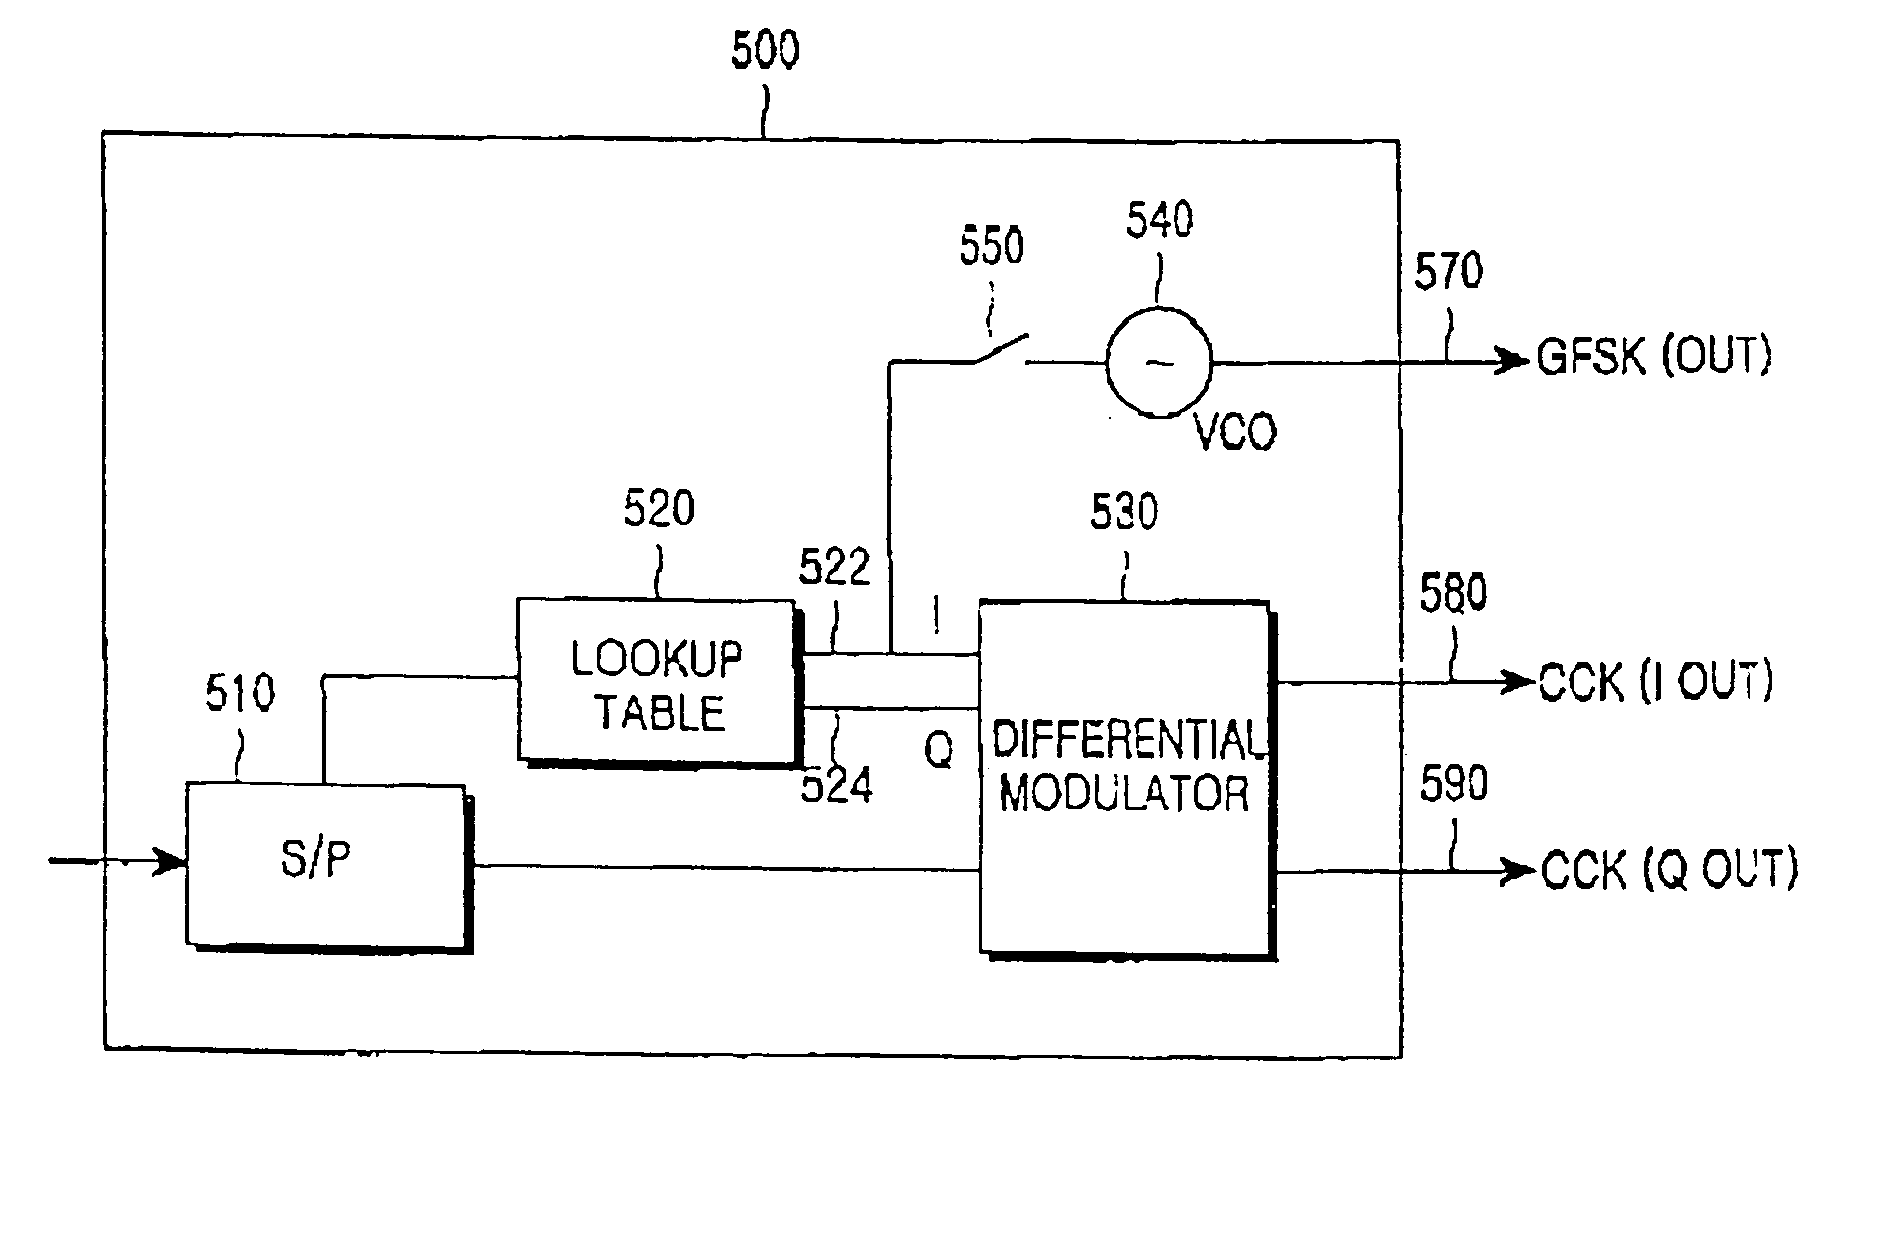 Integrated modulators and demodulators